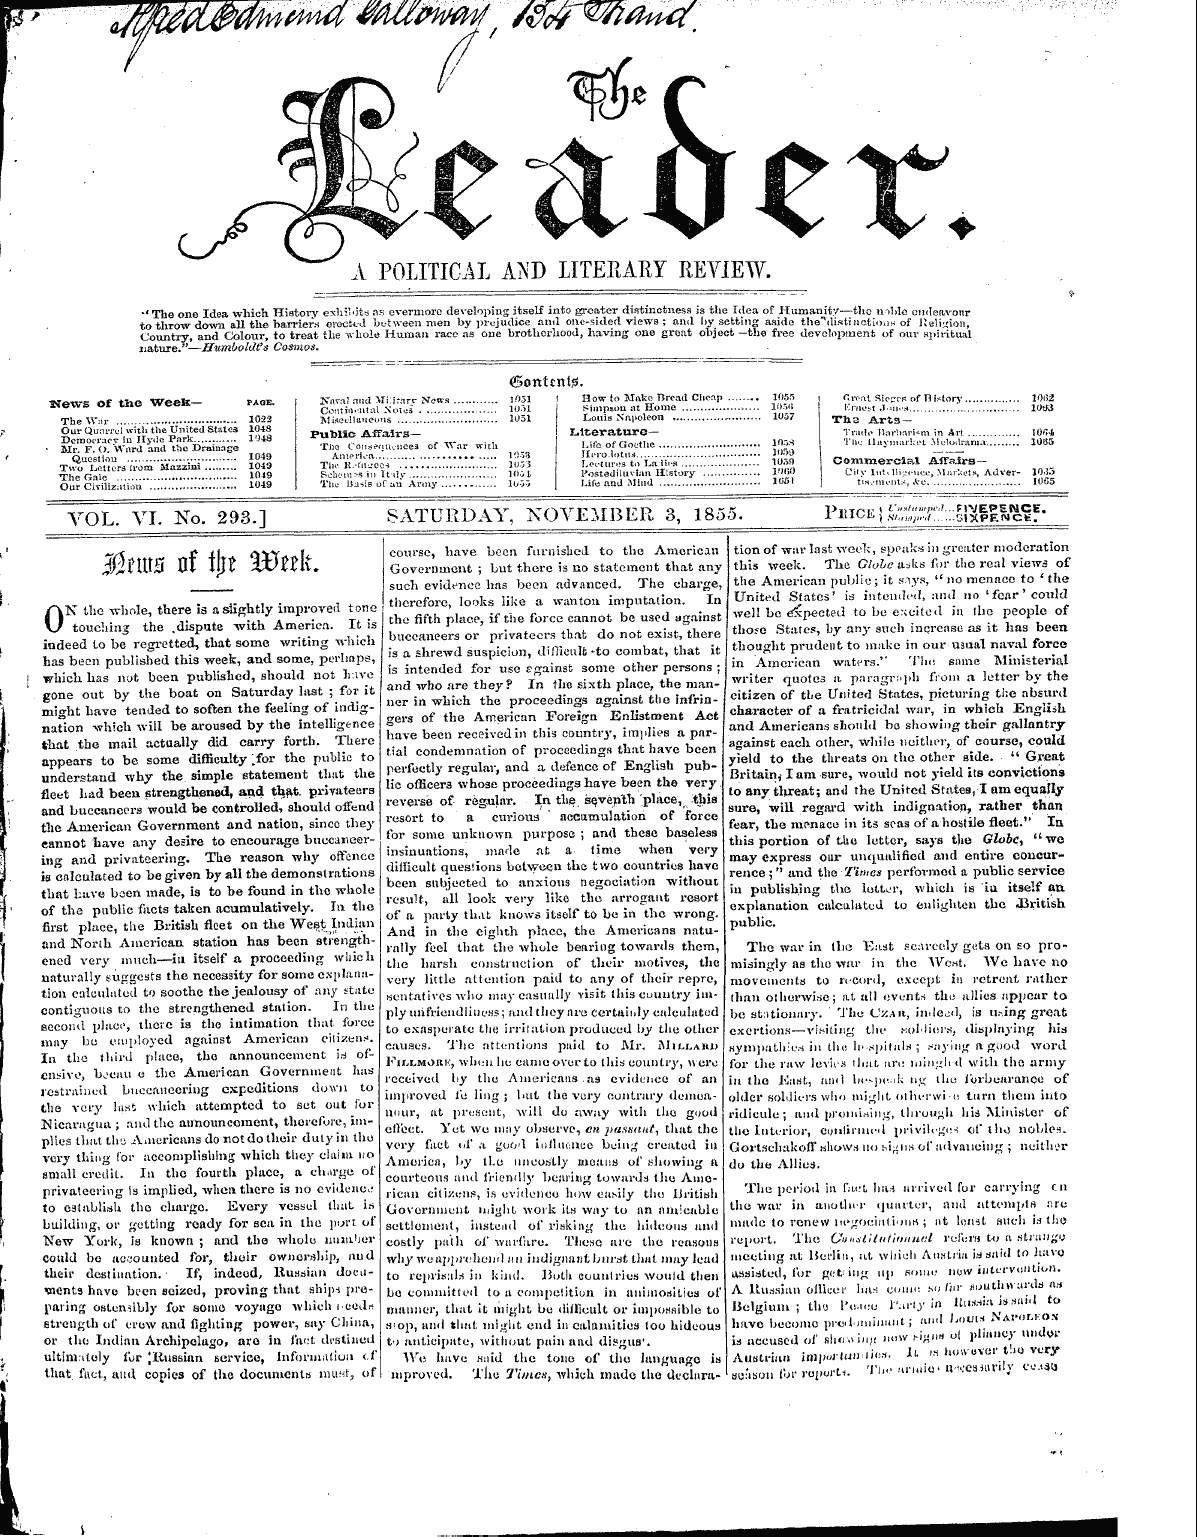 Leader (1850-1860): jS F Y, 1st edition - ( Sonttnte.